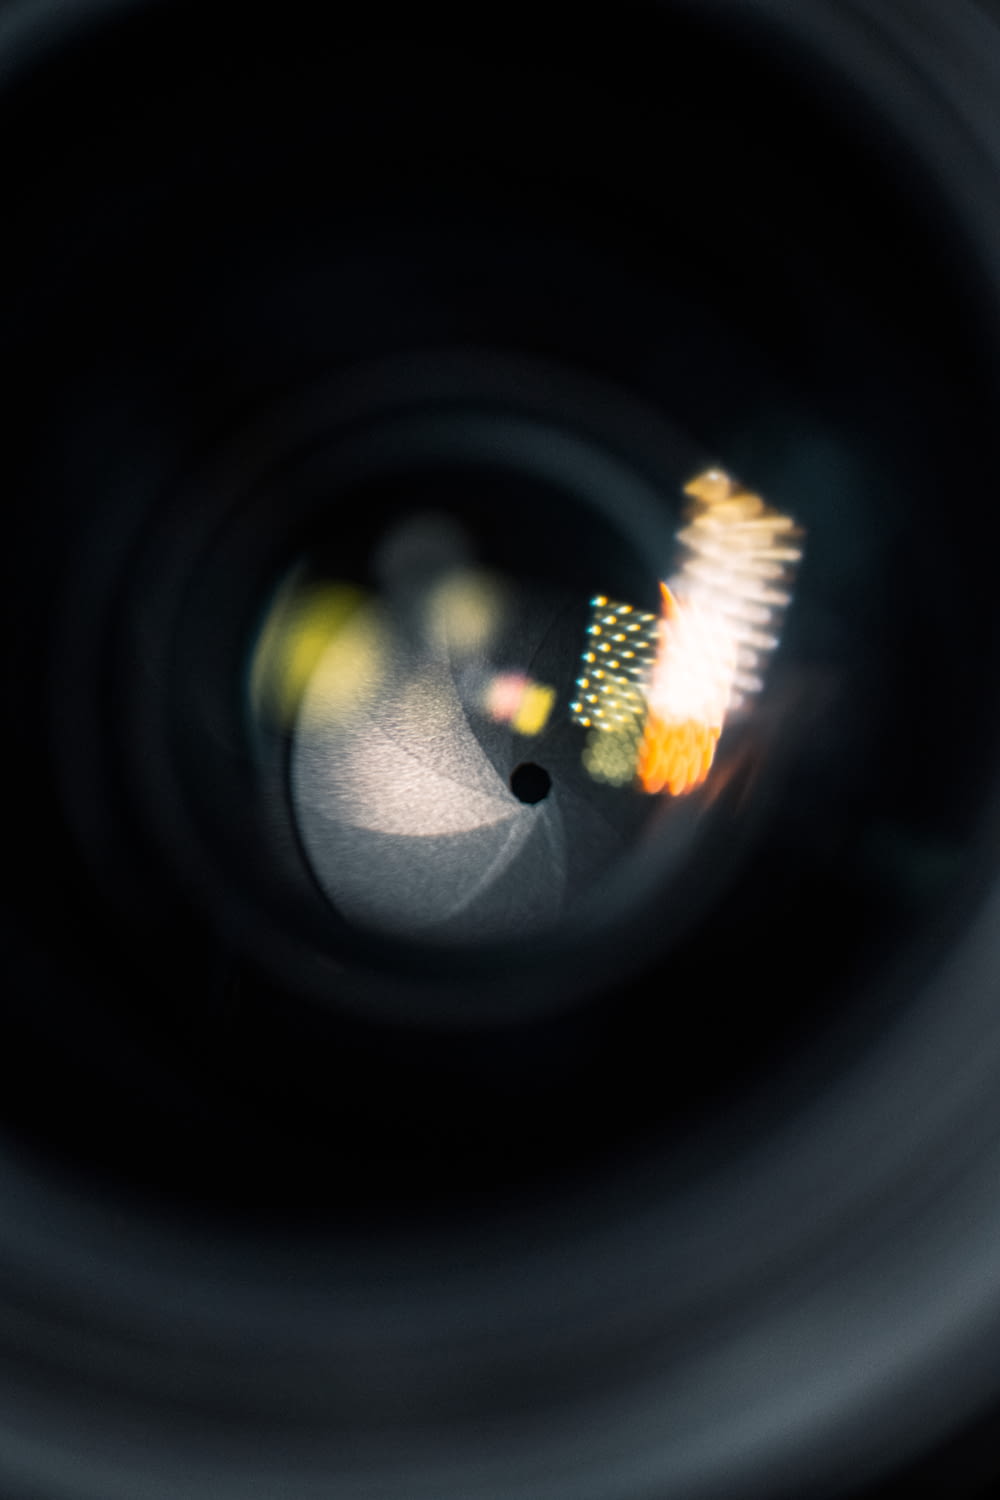 a close up view of a camera lens